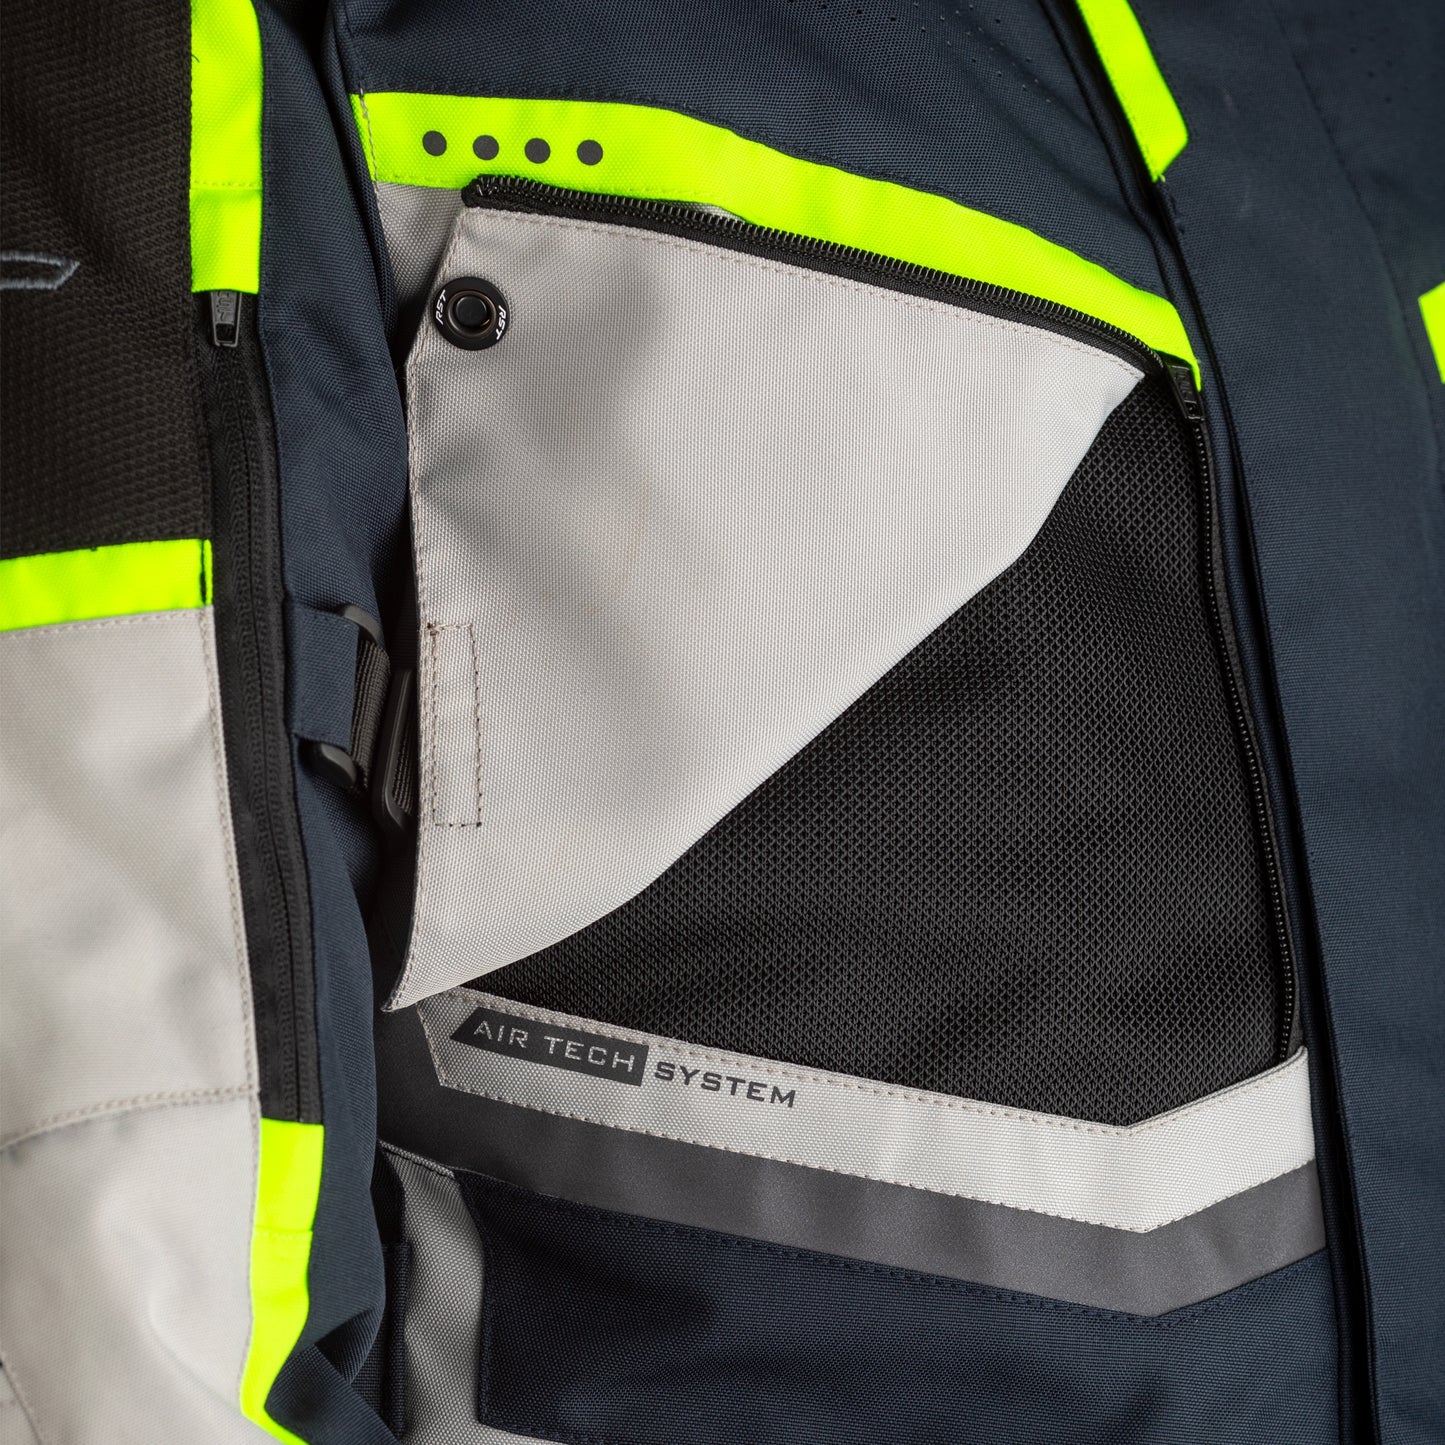 RST Maverick CE Mens Textile Jacket - Blue / Silver / Neon (2361)